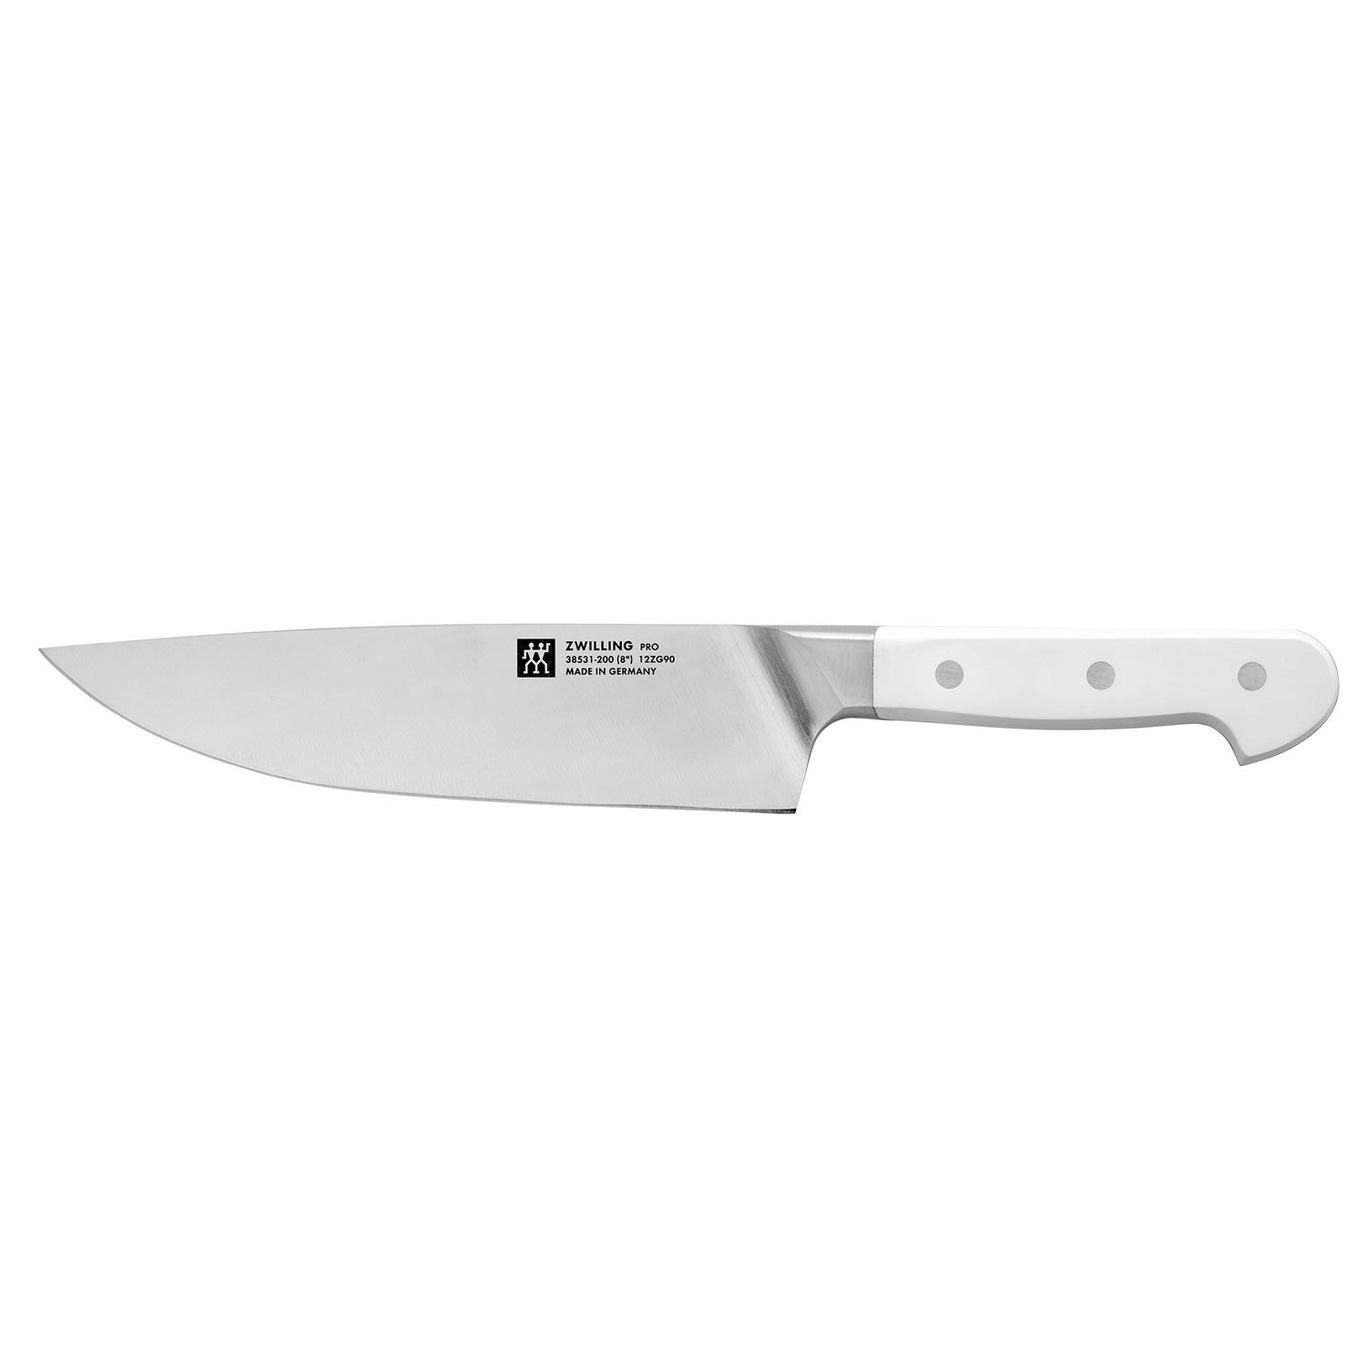 https://royaldesign.com/image/2/zwilling-pro-le-blanc-chef-knife-20-cm-0?w=800&quality=80